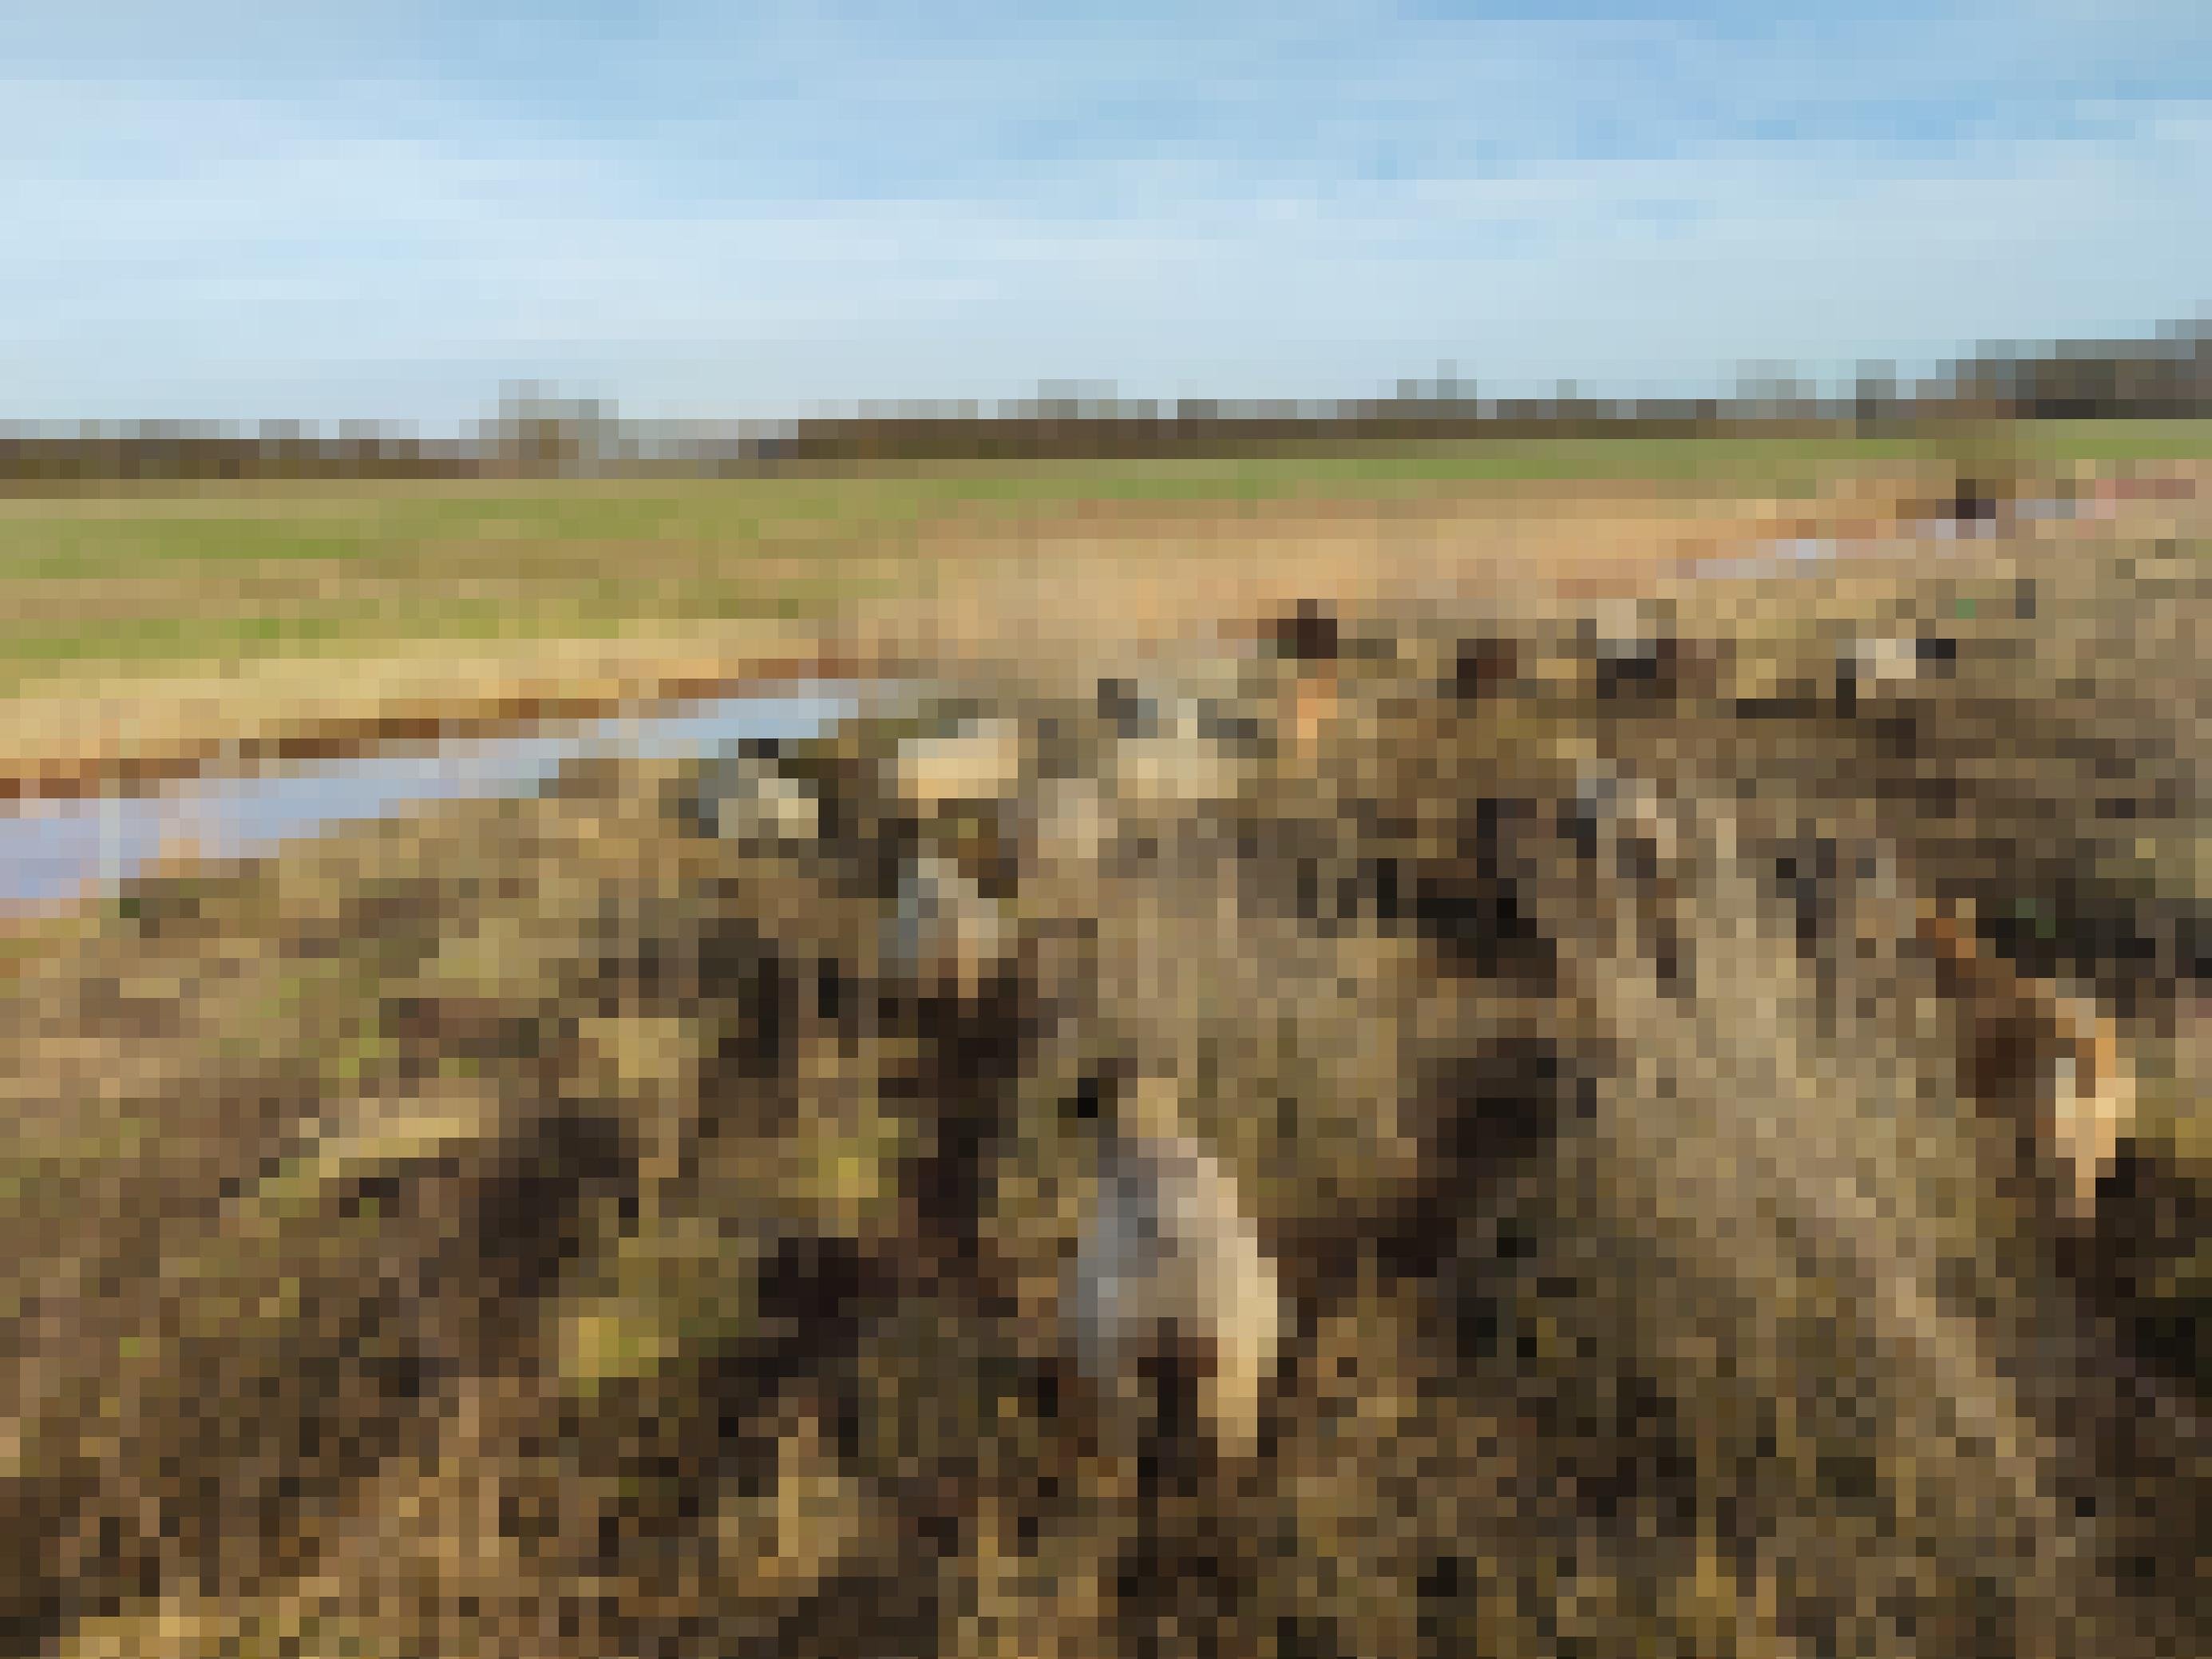 Eine kleine Herde Landschafe zwischen hohen Gräsern in der Landschaft. Im Hintergrund ein Fluss. Die Farbe der Schaffelle harmoniert mit den trockenen Gräsern.